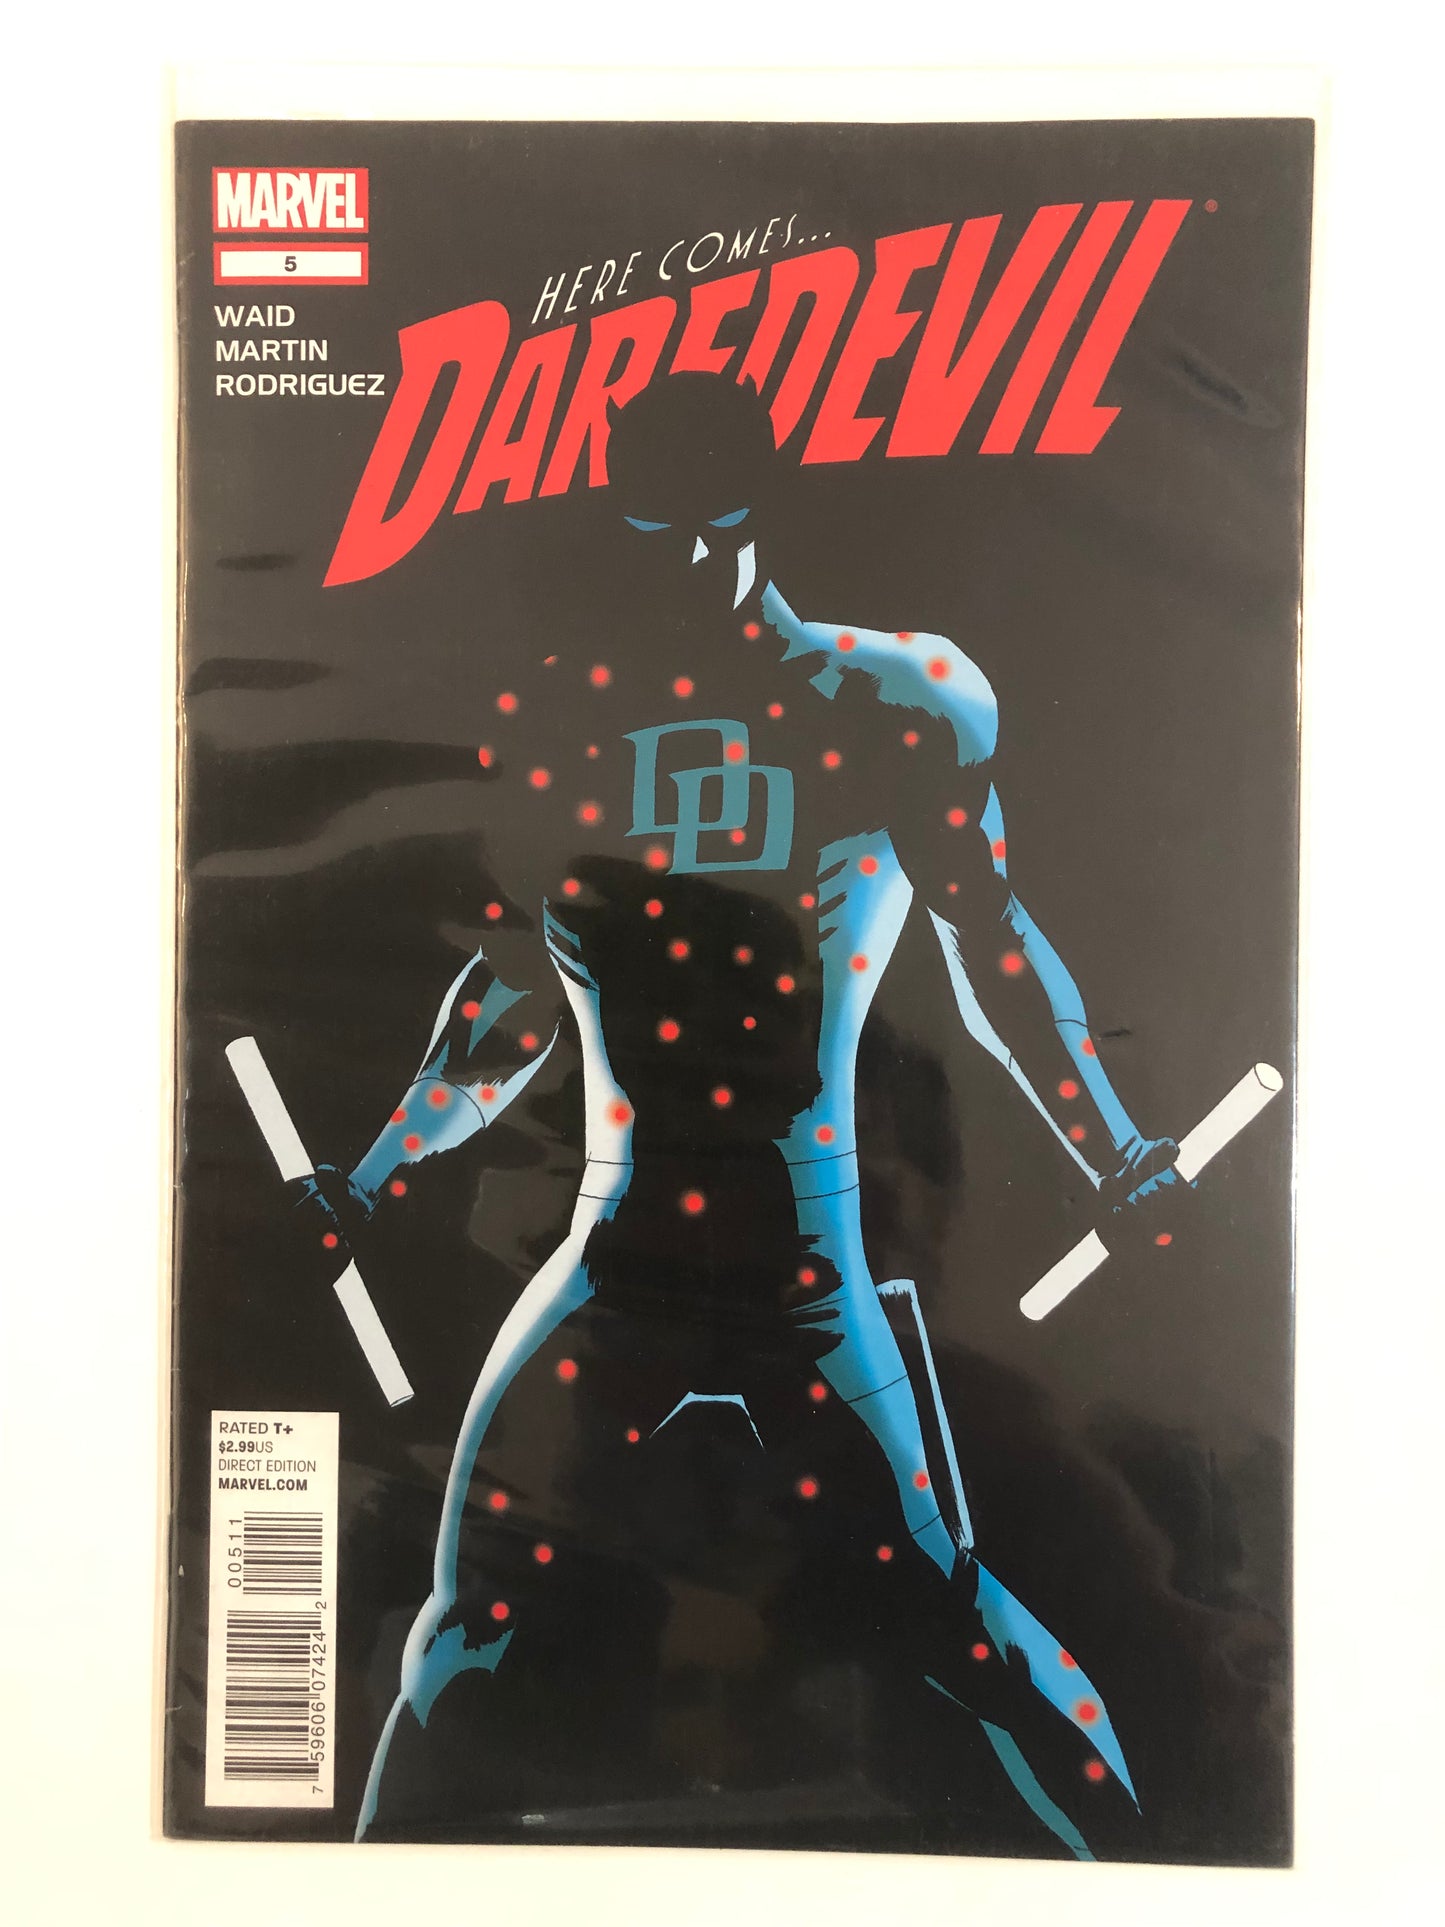 Here Comes Daredevil #5